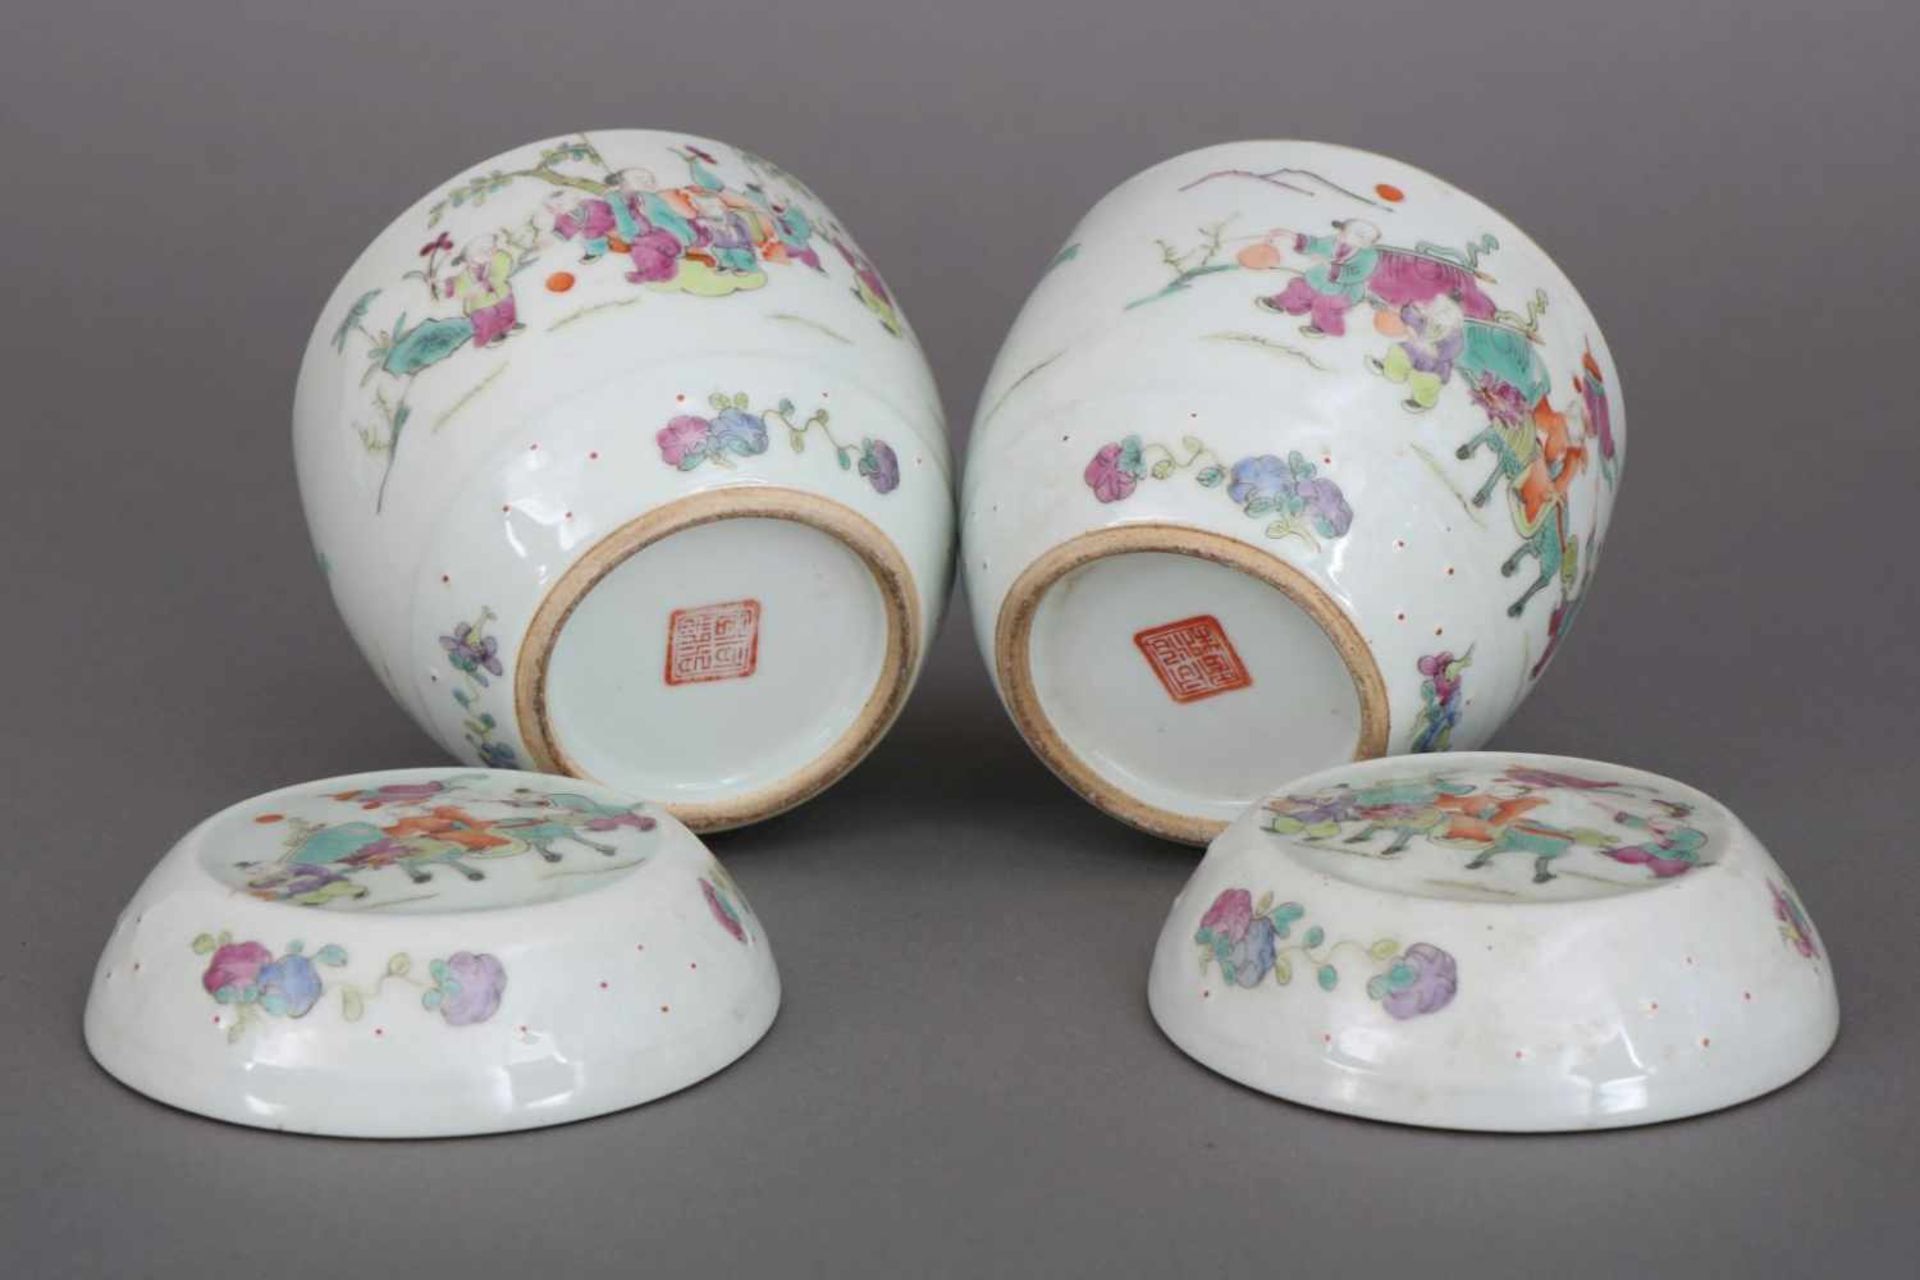 Paar chinesische DeckelgefäßePorzellan, späte Qing Dynastie (1644-1912, hier wohl um 1900), - Bild 2 aus 2